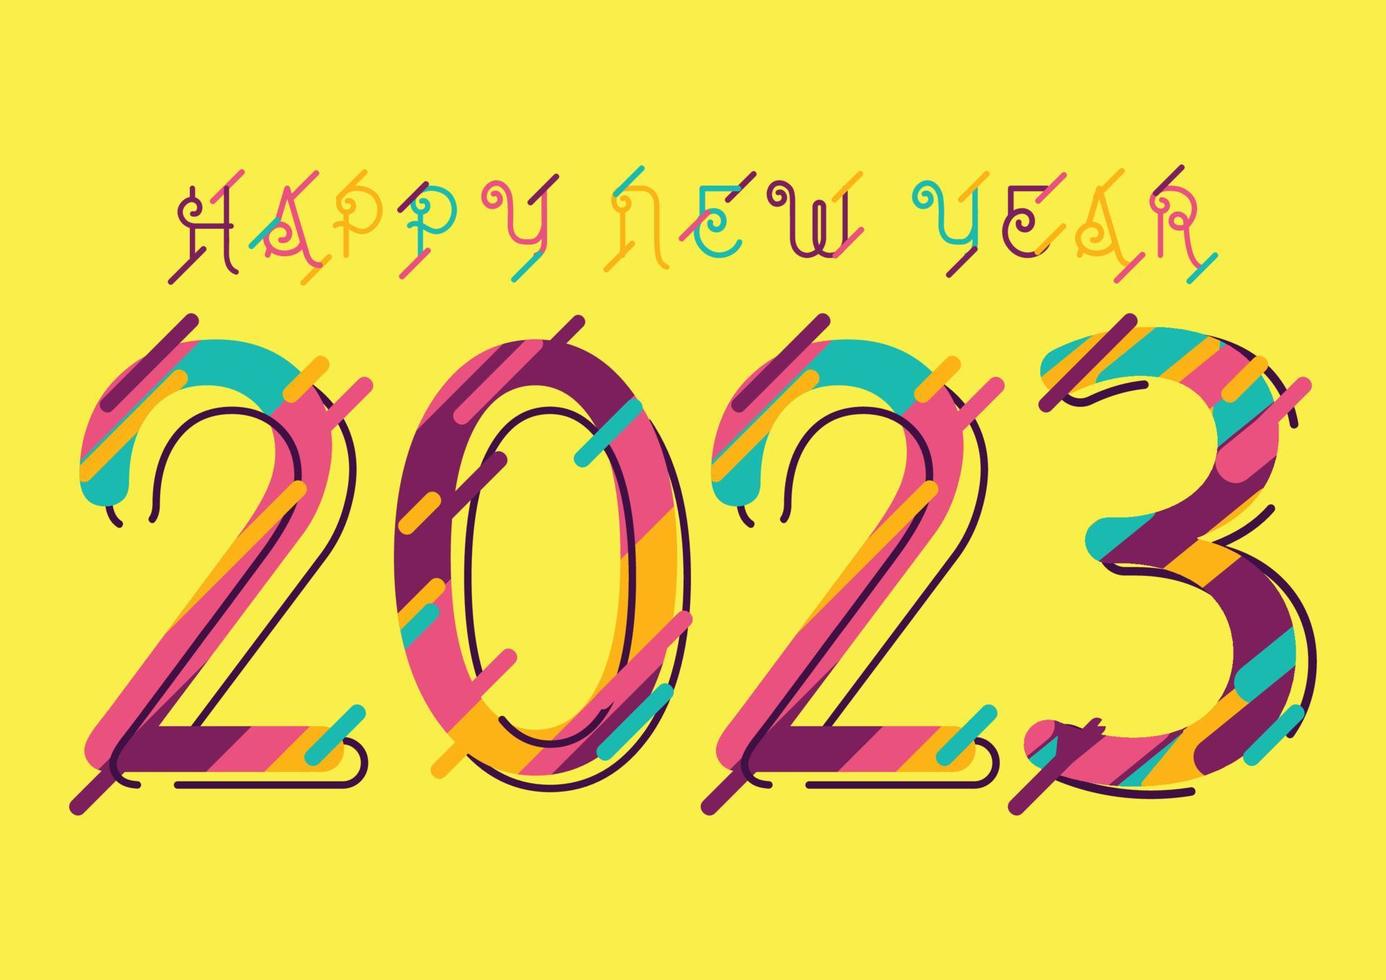 2023 gelukkig nieuwjaar wenskaart met abstracte kleurrijke nummers voor brochureontwerp of zakelijke dagboekomslag. vectorillustratie. vector